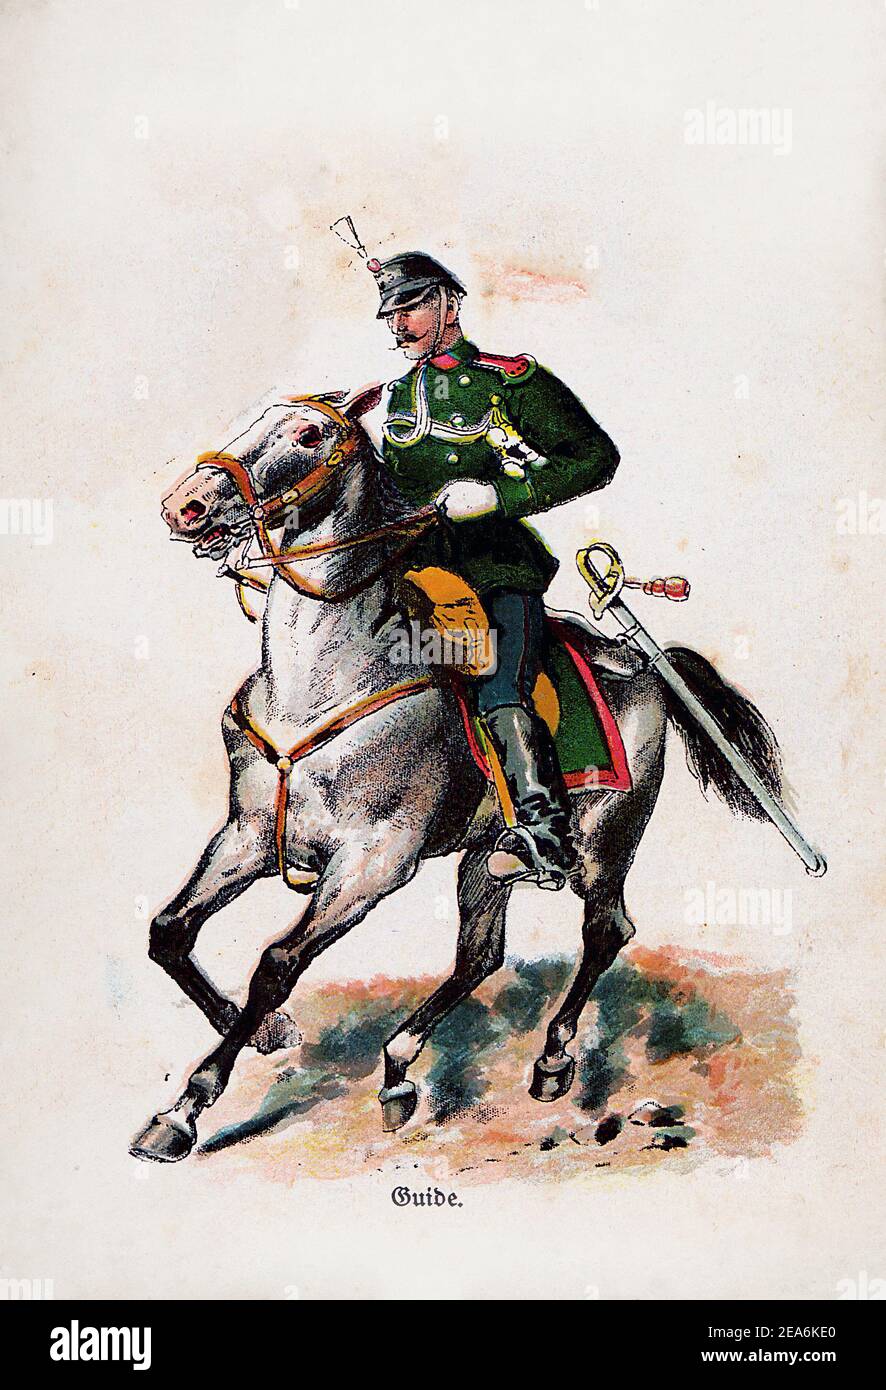 L'armée suisse avant la première Guerre mondiale scout suisse. Confédération suisse, 1910 Banque D'Images